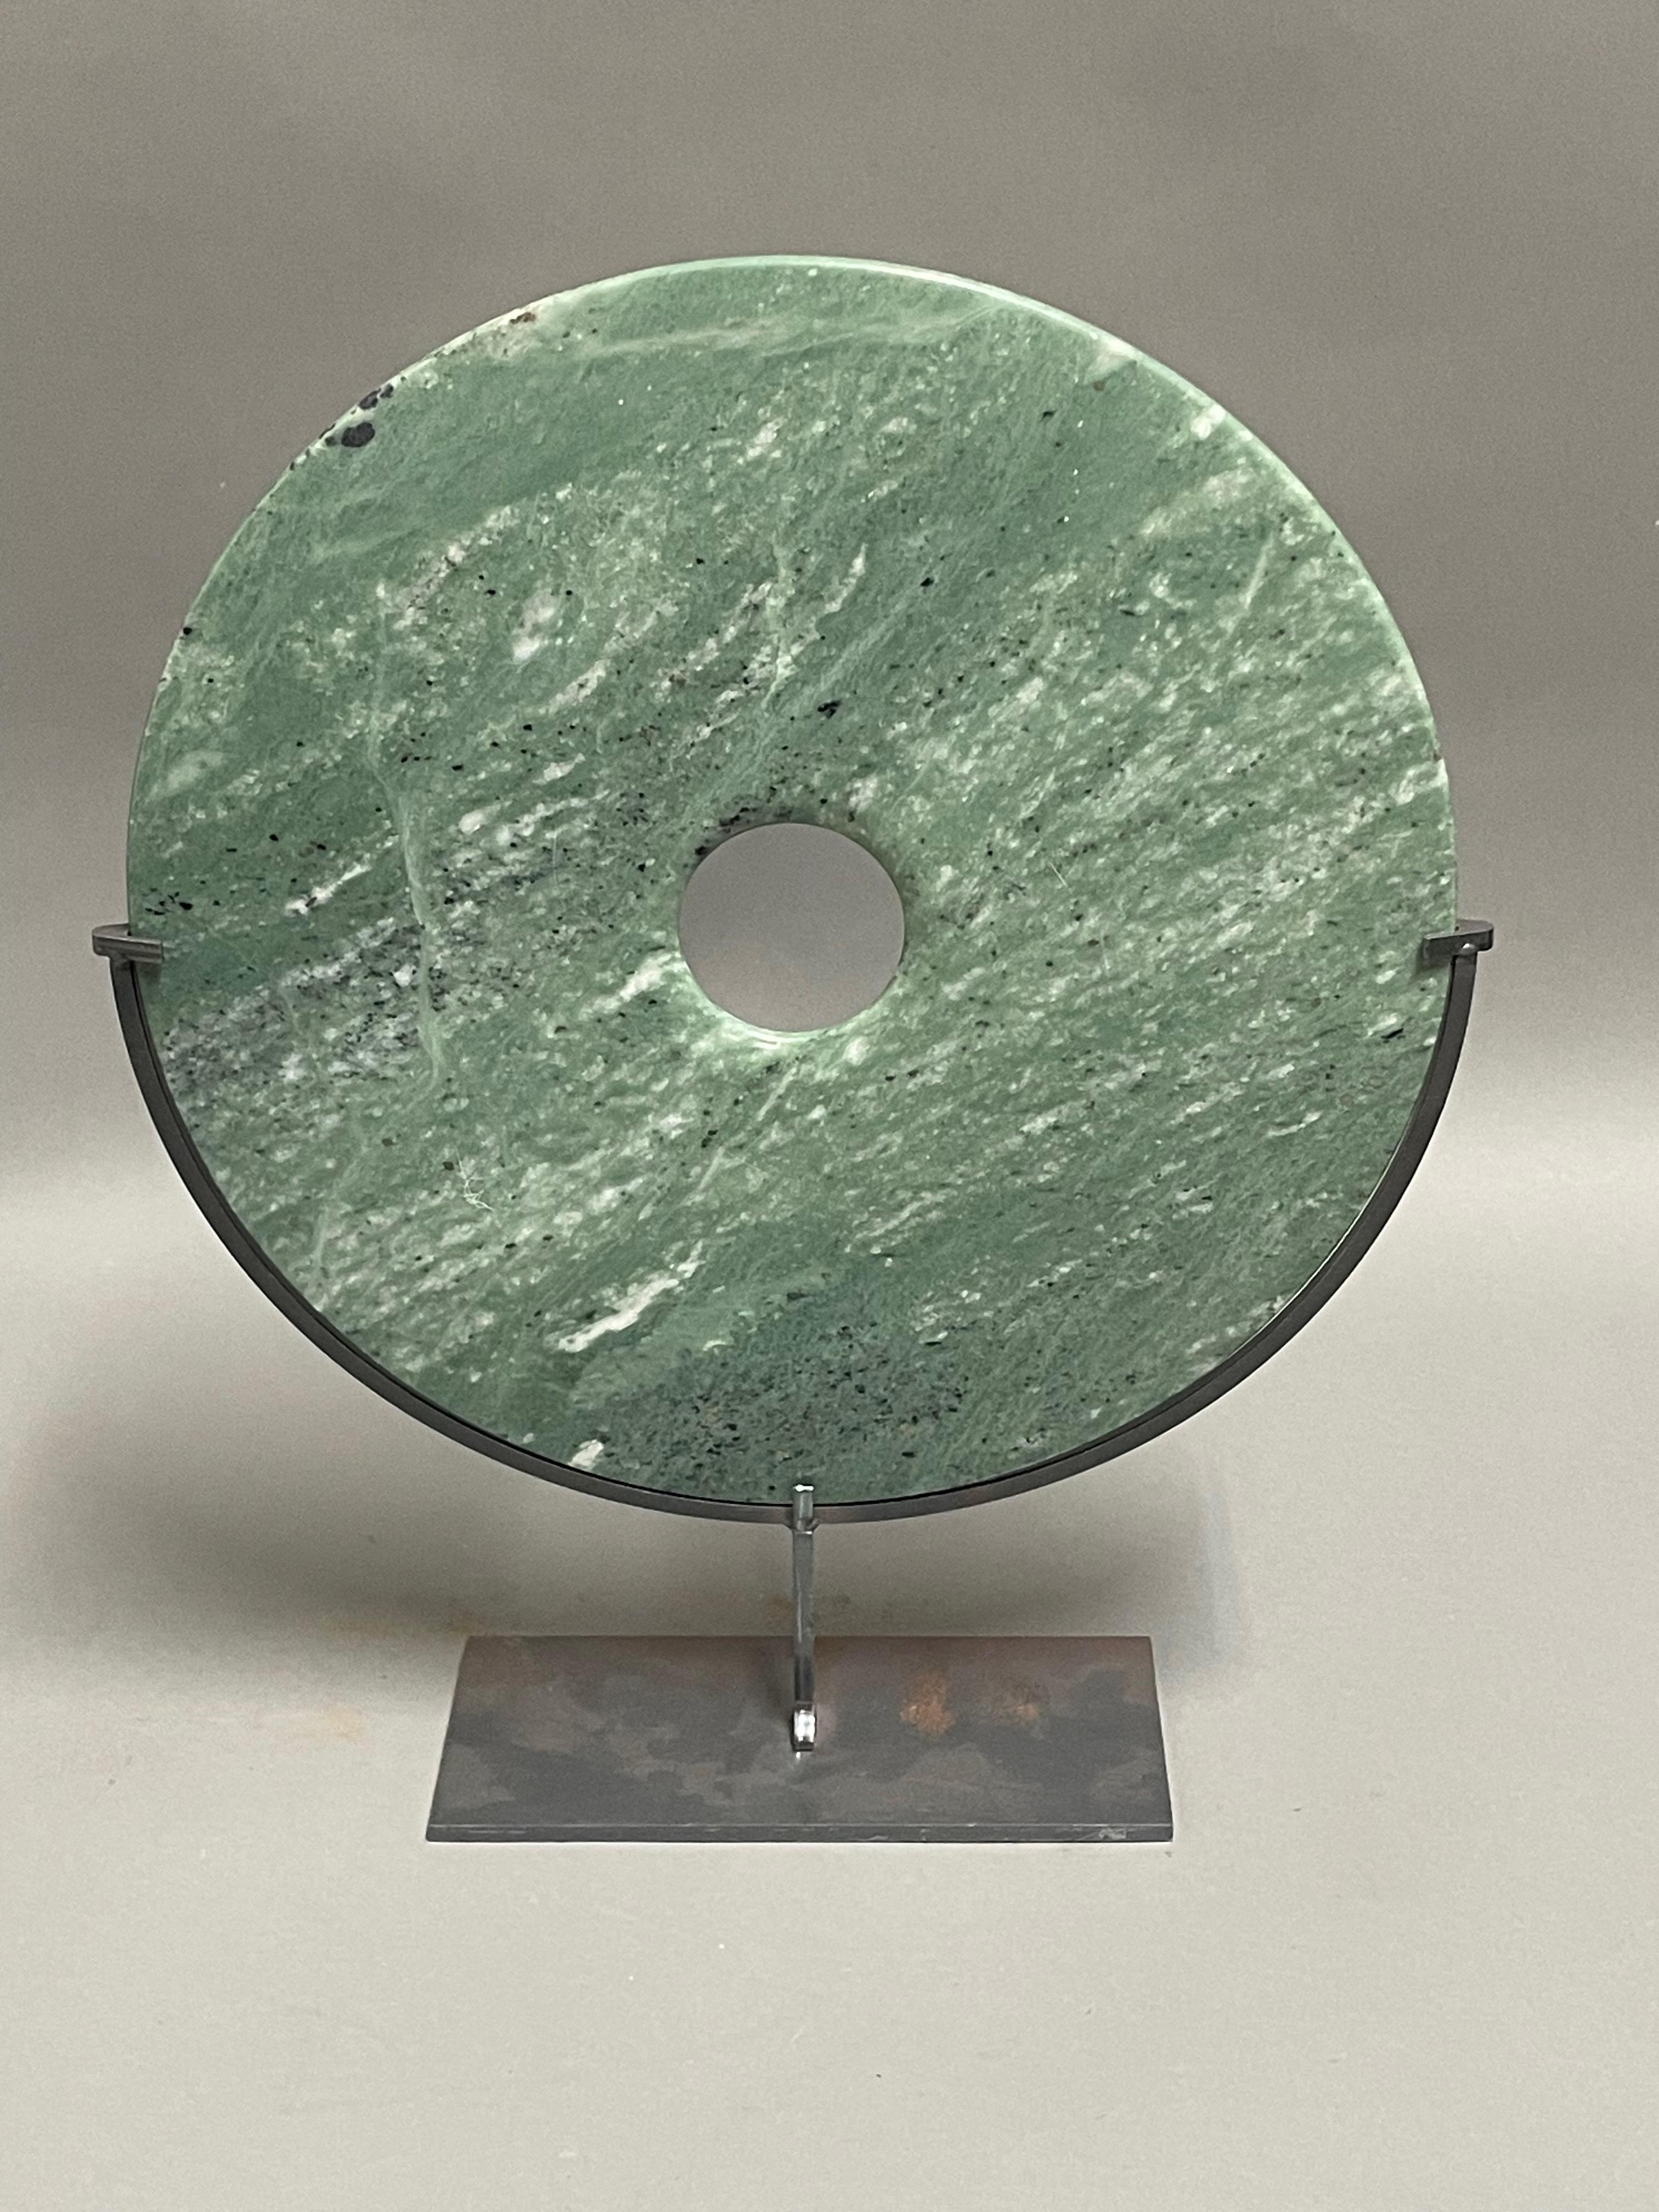 Ensemble chinois contemporain de deux disques en jade coloré.
Un disque mesure  12d  x  15h    mesures du stand  7  x   3
Un disque mesure    8d   x  11h    mesures du stand  5  x  2.5
La crevette en pierre sculptée à la main est très bien placée. 